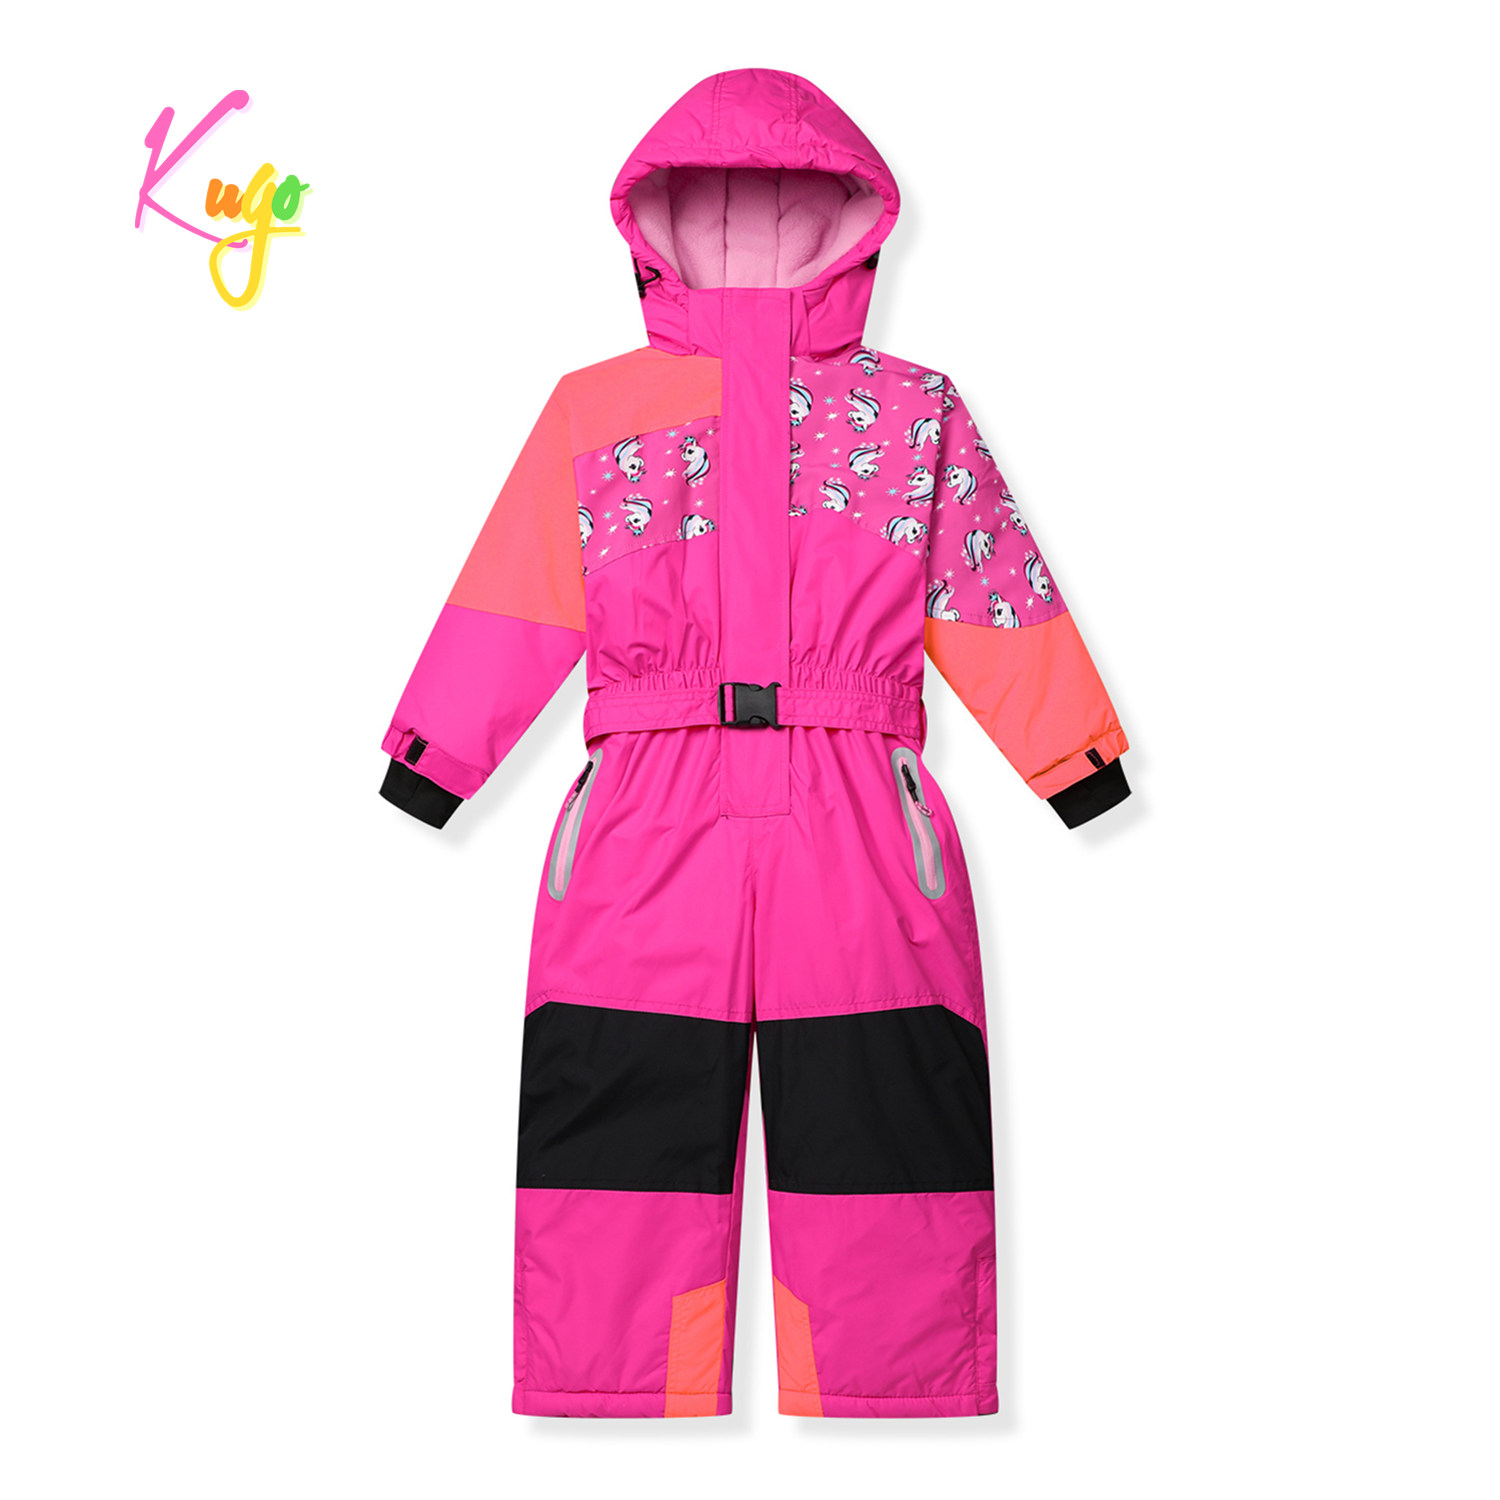 Dívčí zimní kombinéza - KUGO PB9910, růžová Barva: Růžová, Velikost: 98